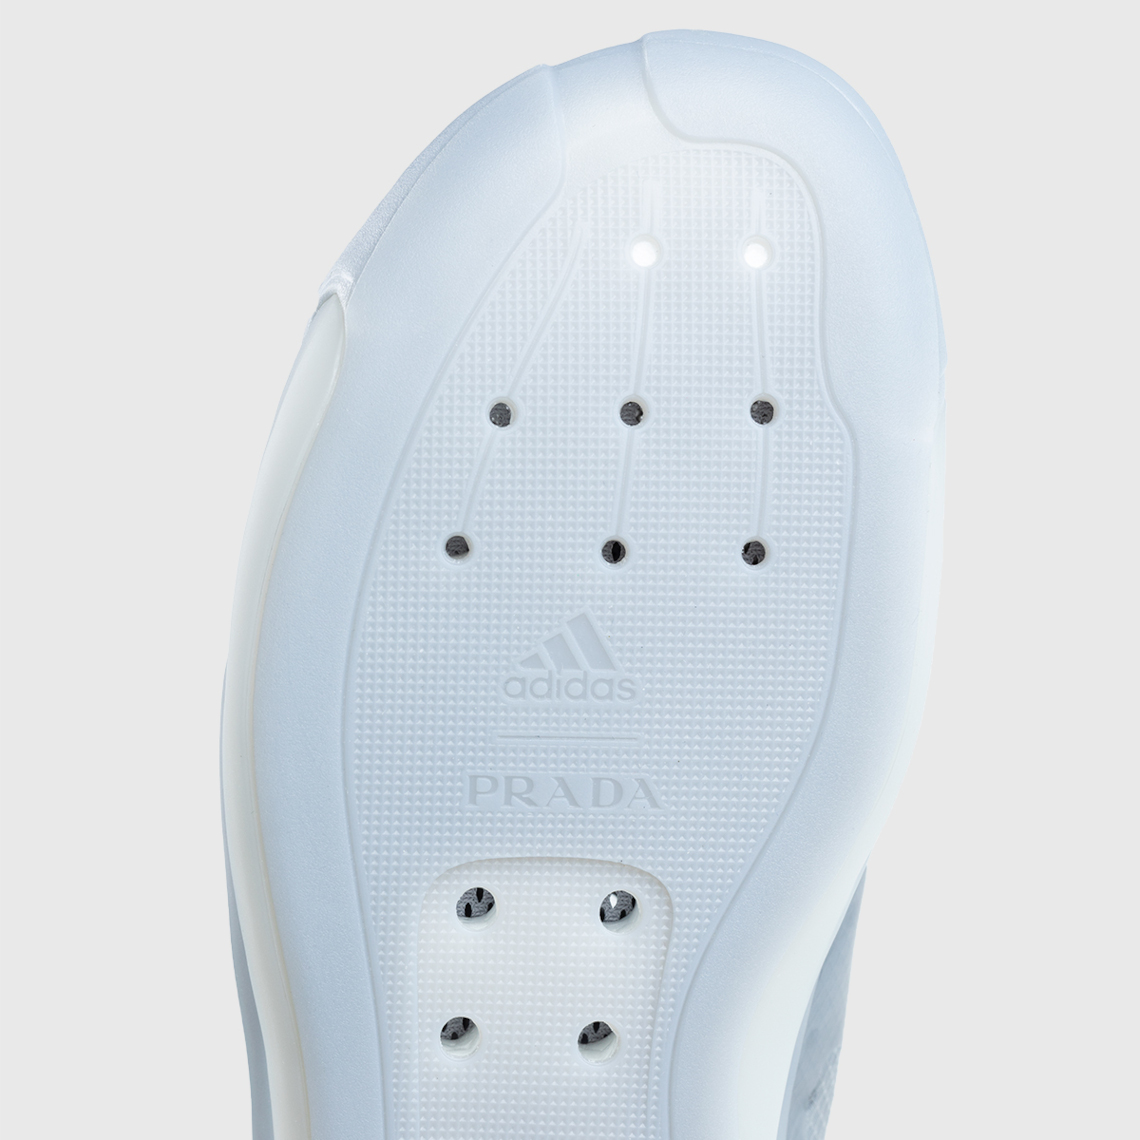 Prada adidas Luna Rossa 21 Grey FW1079 Release | SneakerNews.com